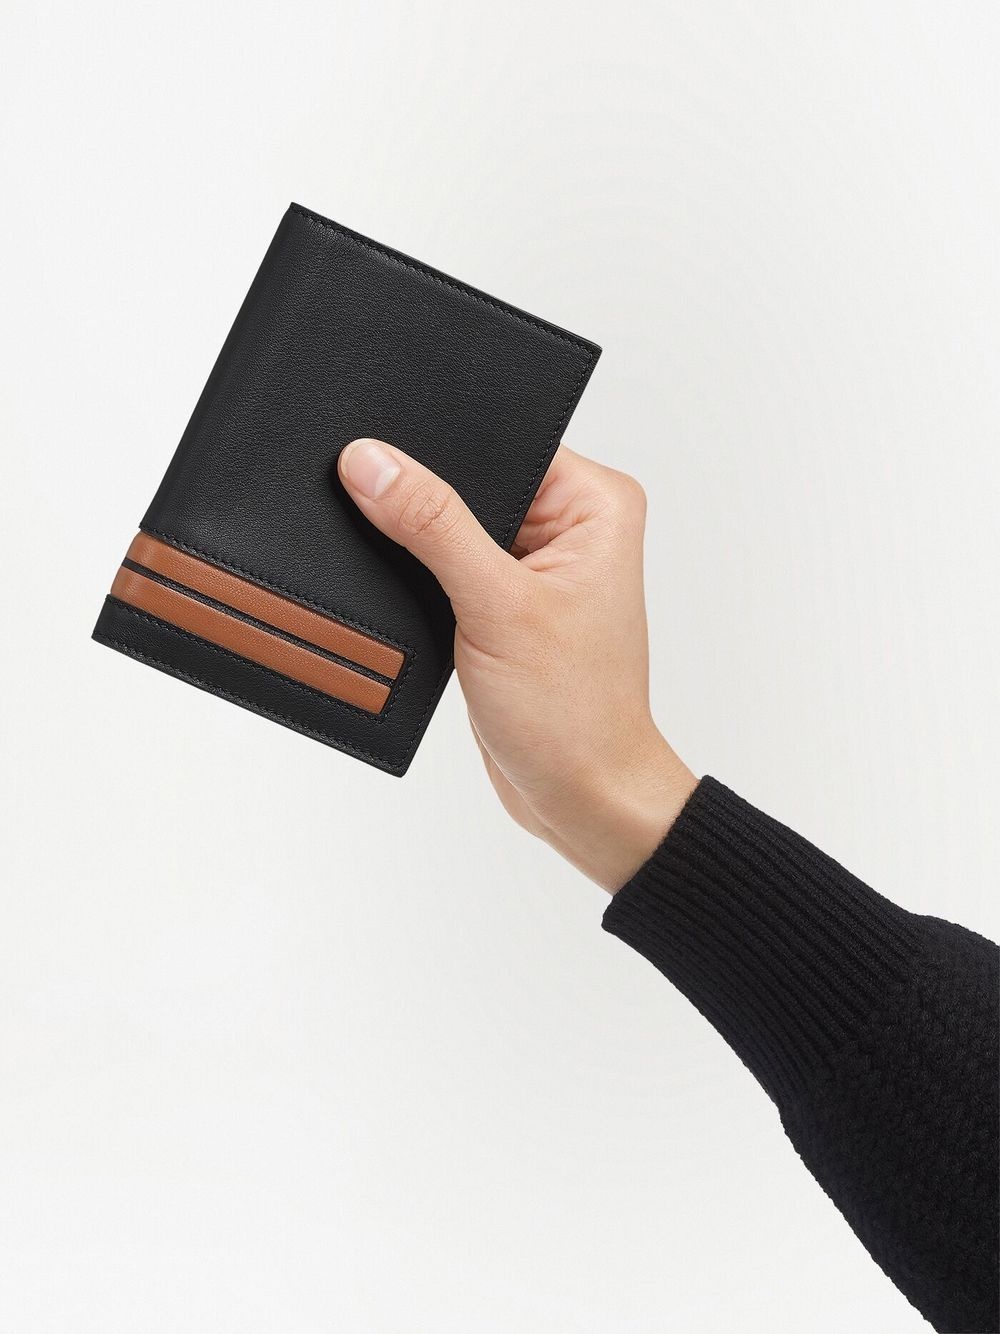 stripe-detail leather passport case - 5